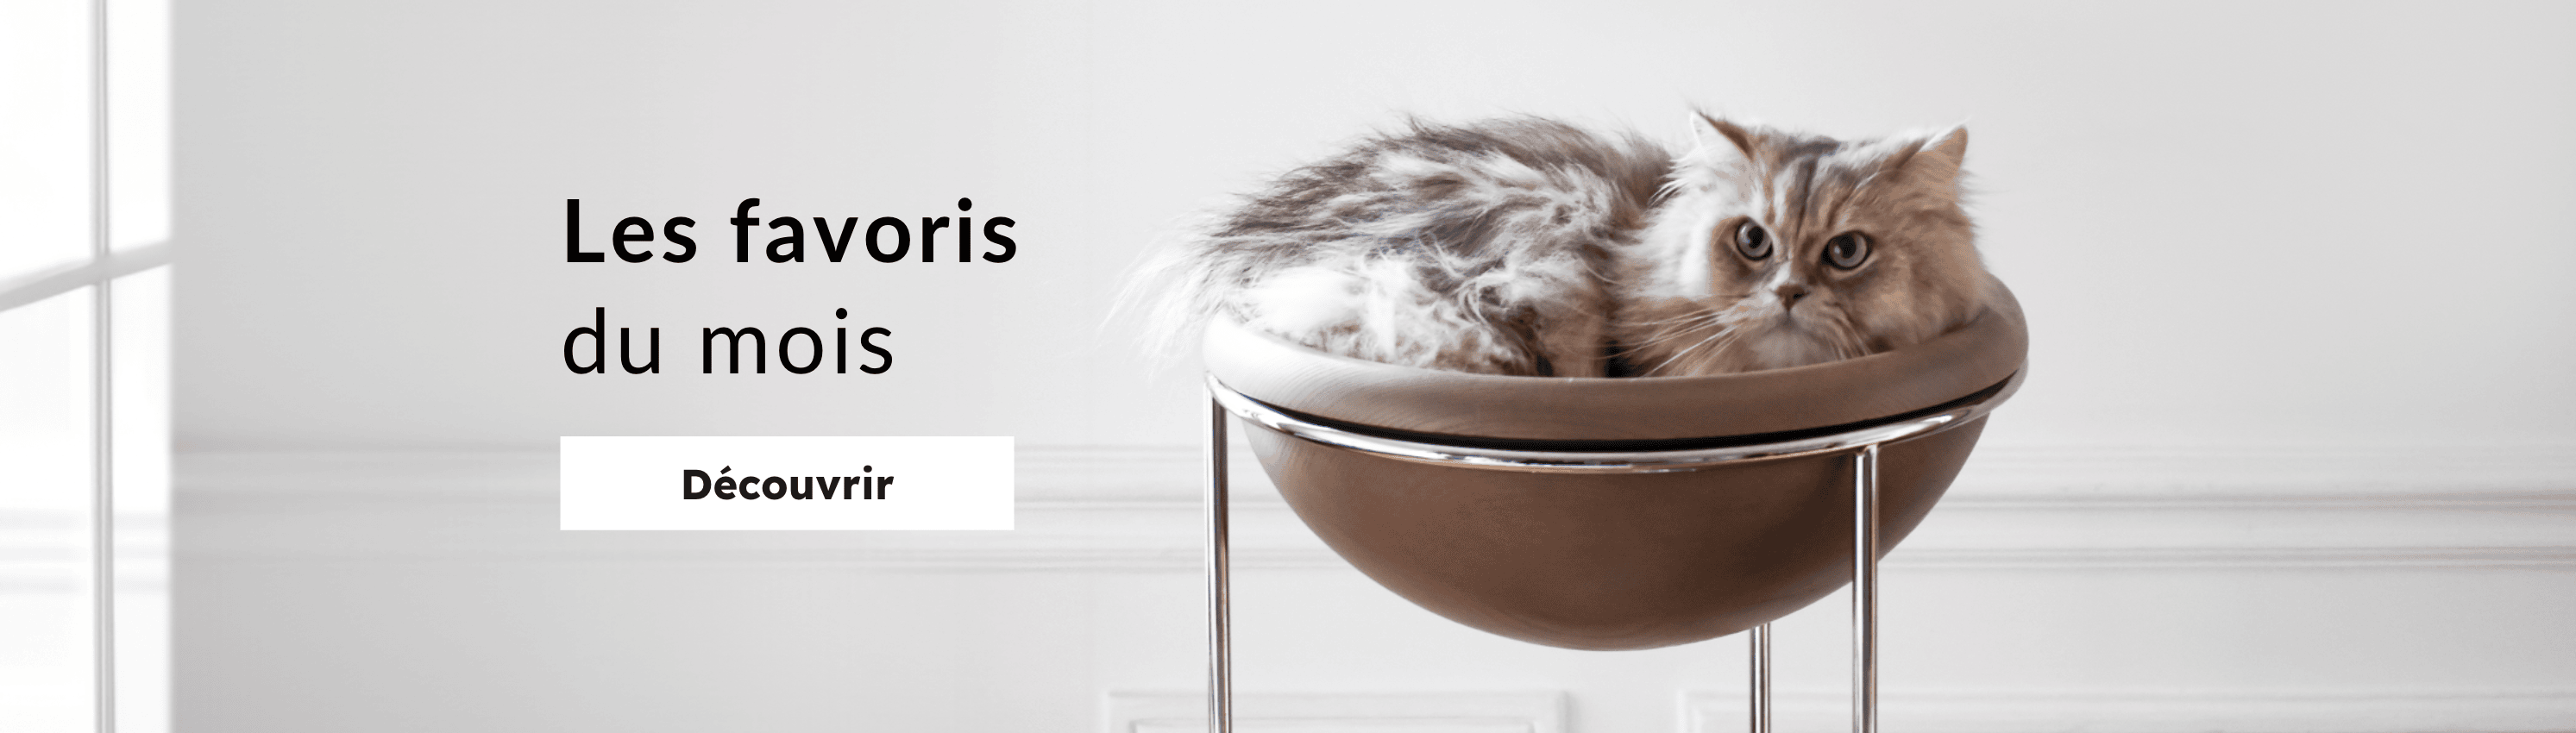 Bogarel, mobilier contemporain pour chats